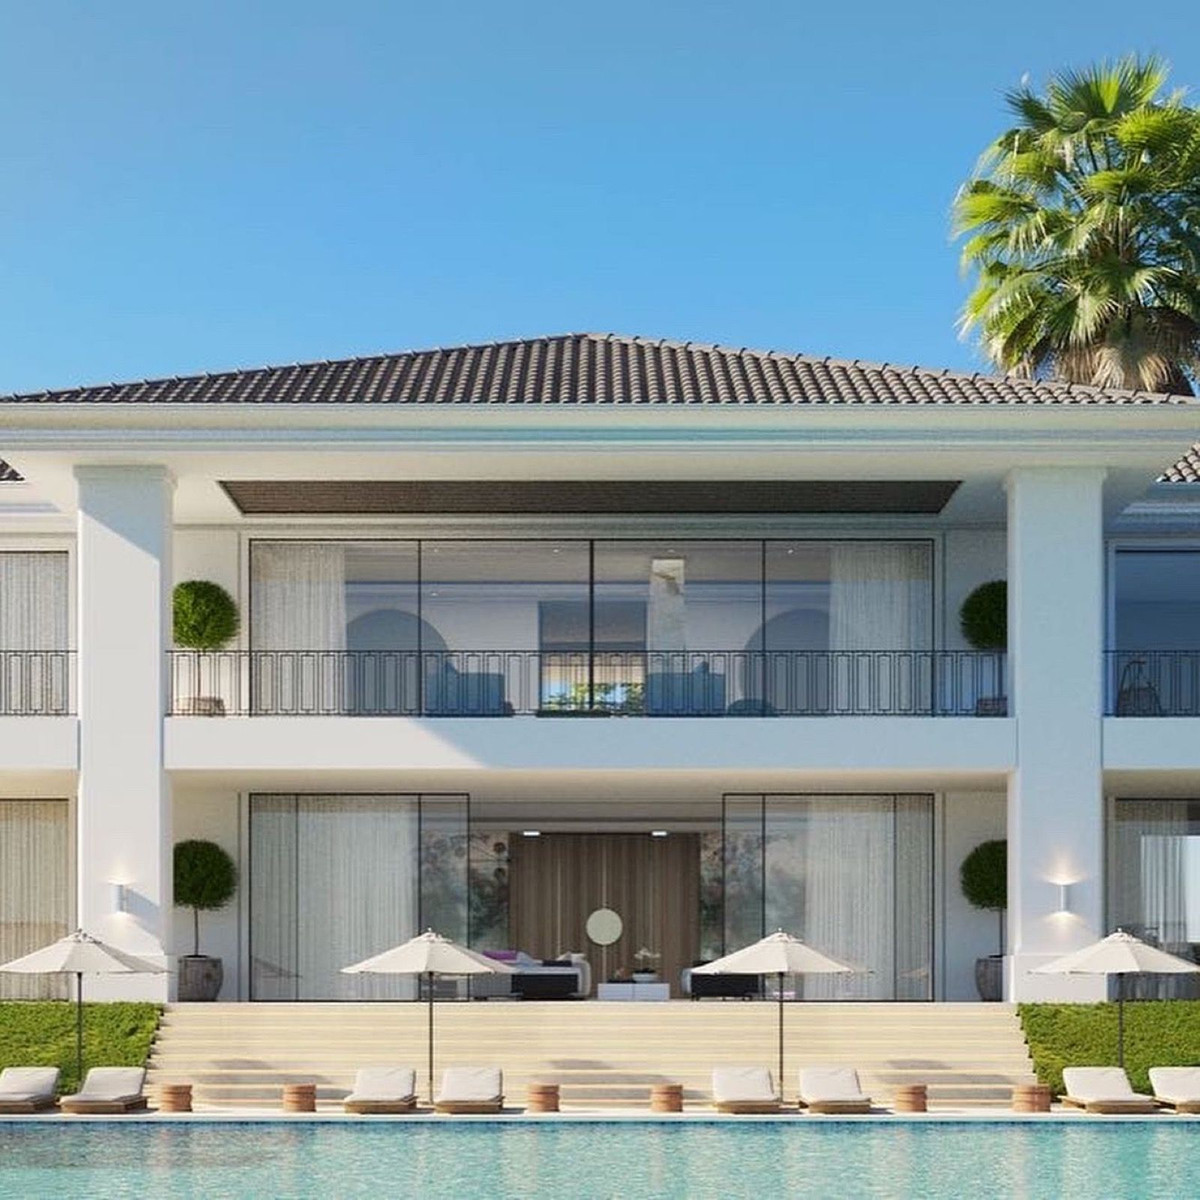 Villa for sale in Benahavís, Costa del Sol